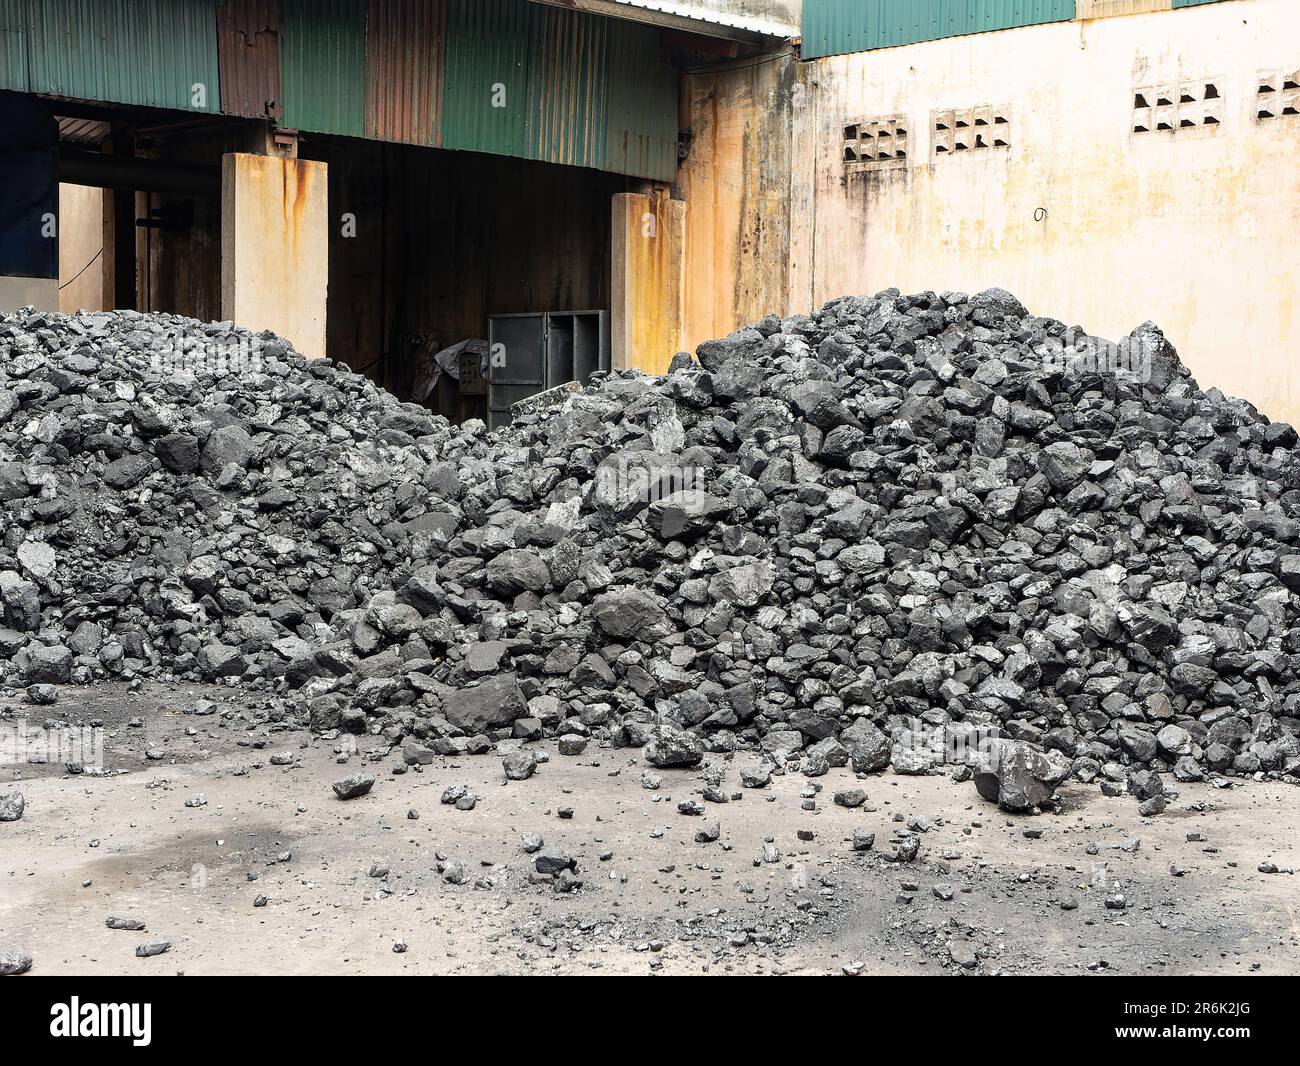 Pile di carbone nel cortile di una fabbrica in Vietnam dove viene utilizzato come combustibile per la produzione di vapore per vari processi industriali. Foto Stock